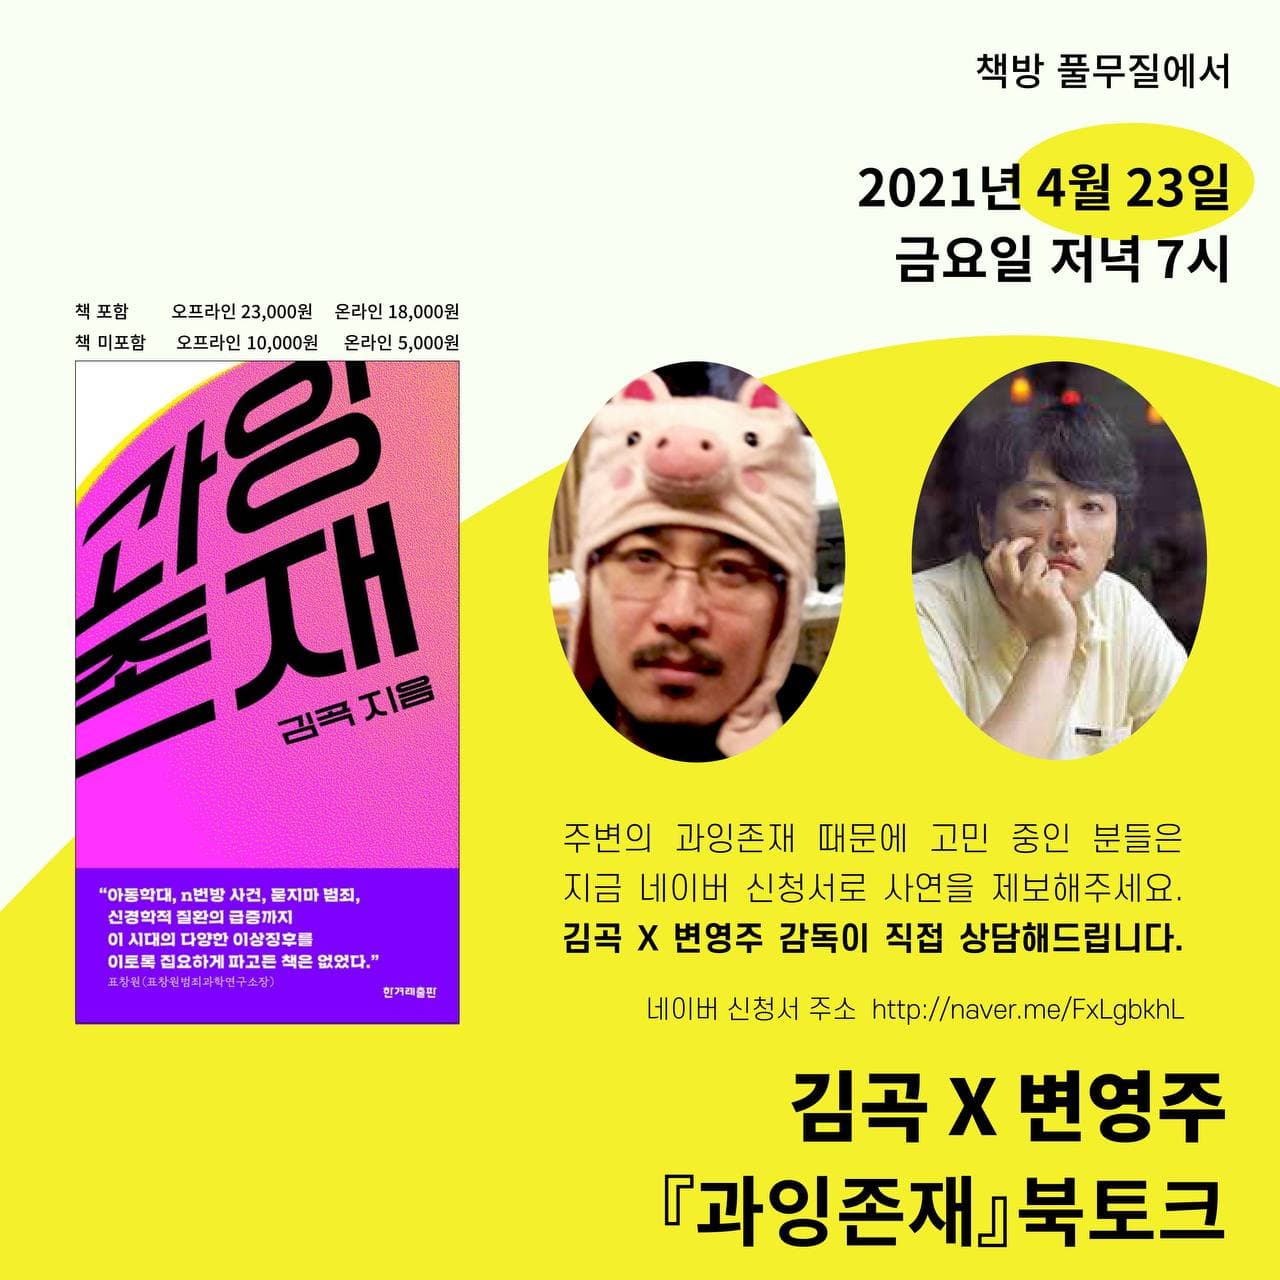  김곡X변영주 북토크